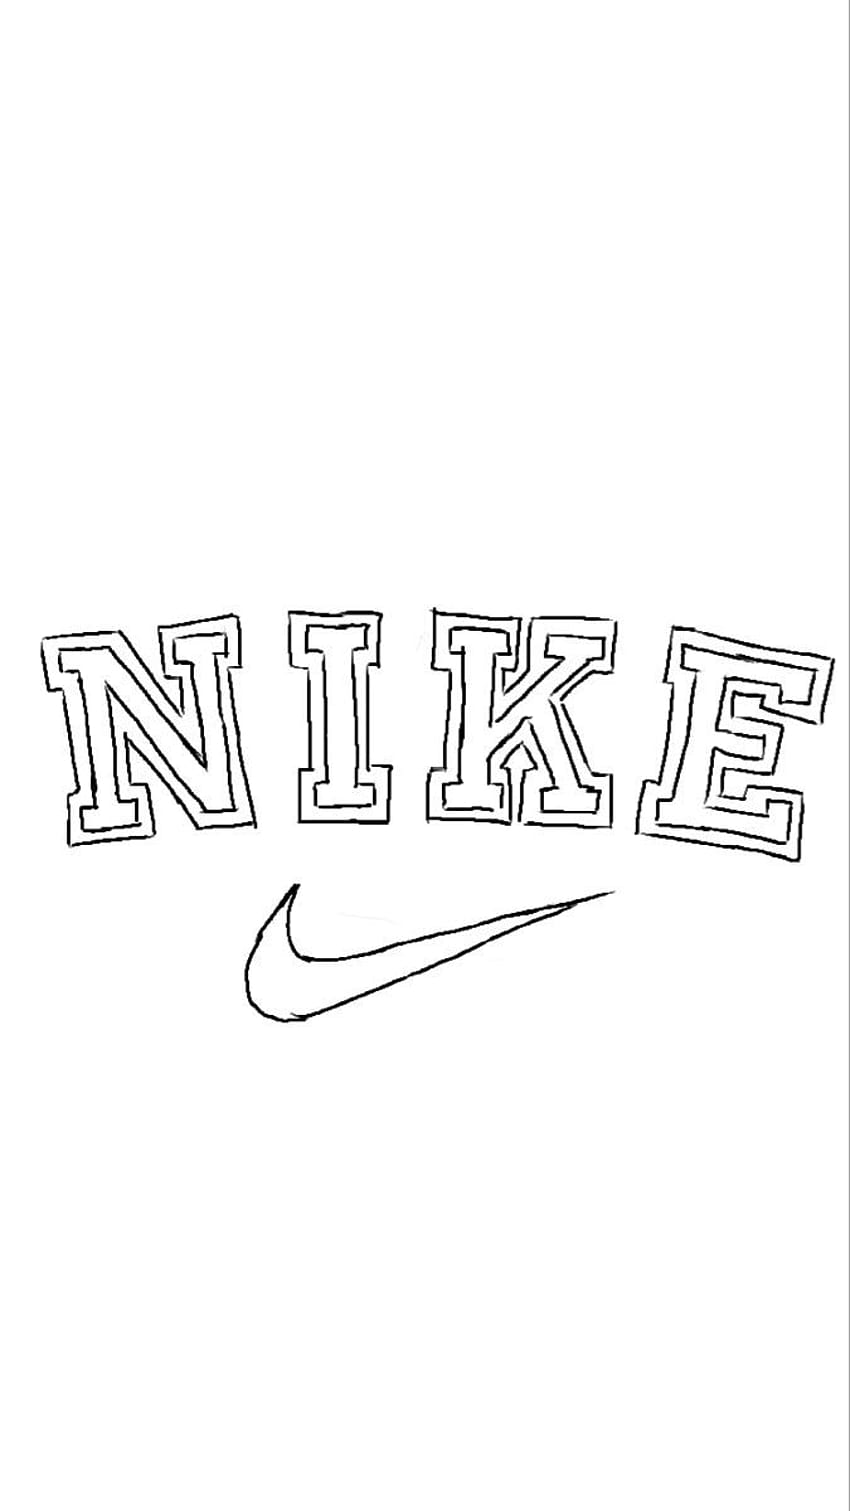 Logo Nike vintage Bạn đã từng ngắm nhìn những chiếc giày Nike cũ kỹ và thấy chúng trở nên đẹp hơn khi thời gian trôi qua? Vậy thì hãy cùng trải nghiệm cảm giác tương tự với logo Nike vintage. Sự kết hợp hài hòa giữa dáng vẻ đơn giản và màu sắc tinh tế khiến chiếc logo này trở nên đặc biệt và lôi cuốn.